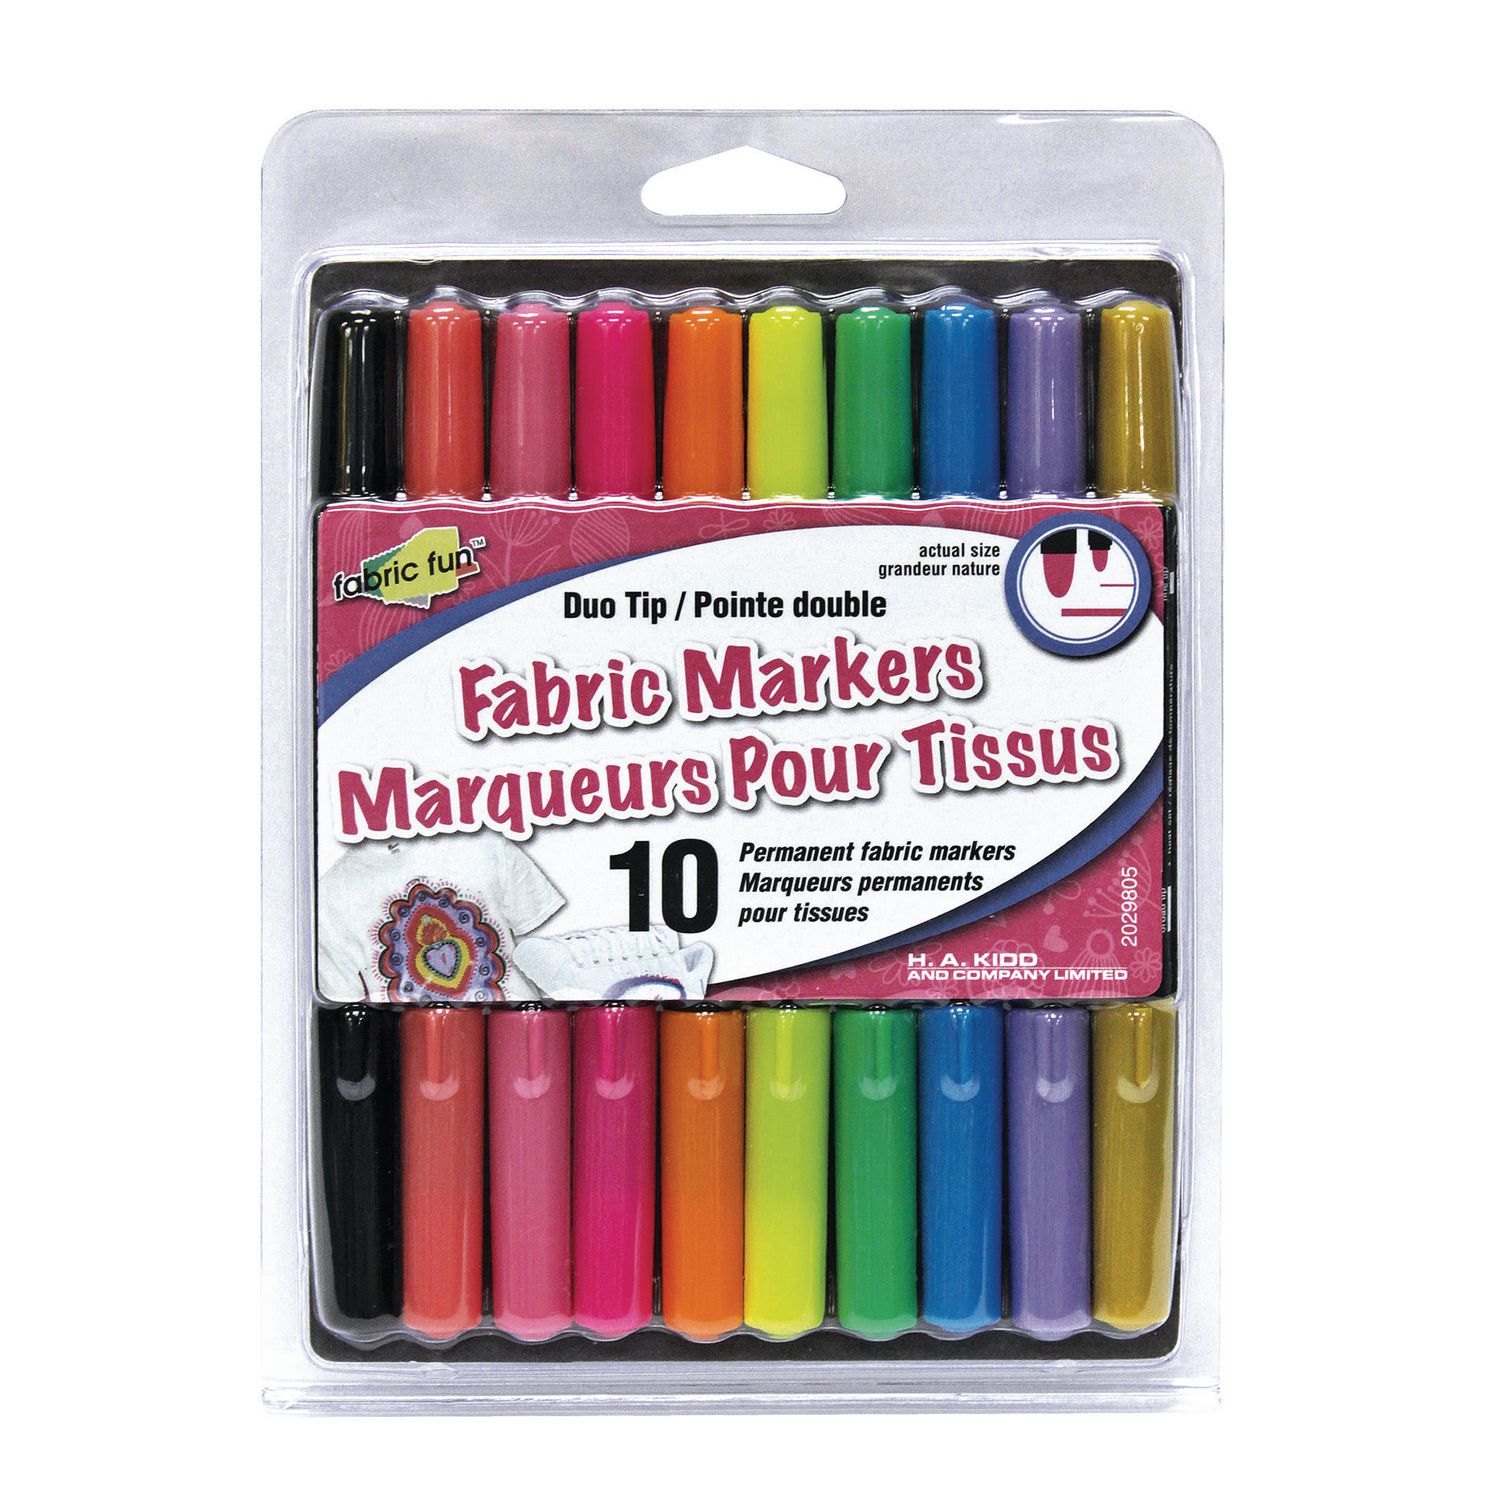 8 crayons pour textile pour customiser vêtements et accessoires